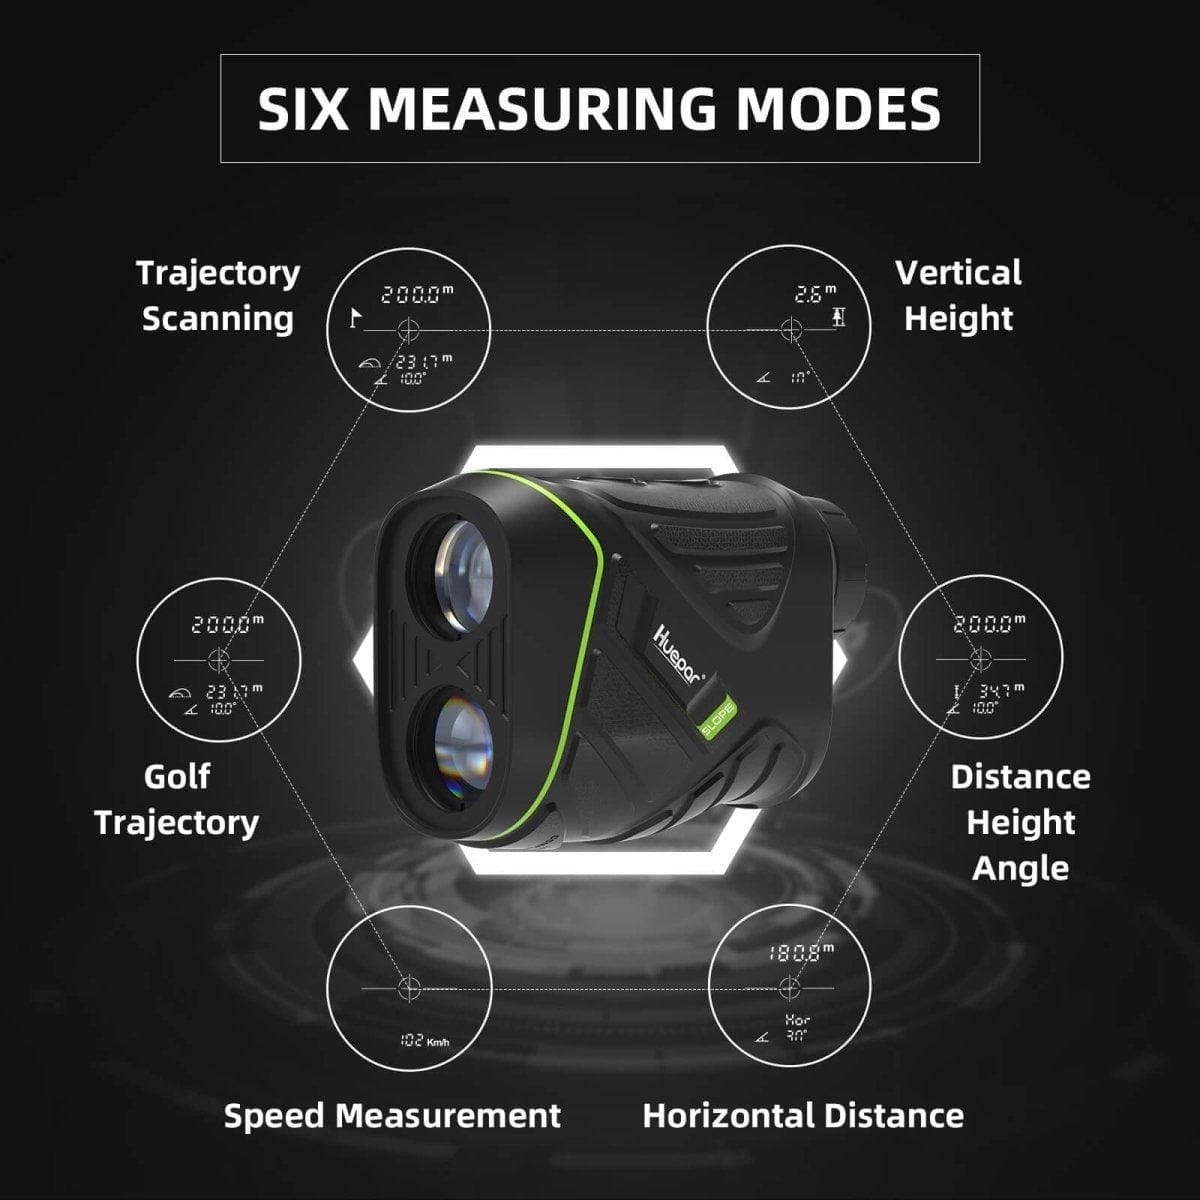 Huepar HLR600 Golf Rangefinder Scope for precision distance measurement5